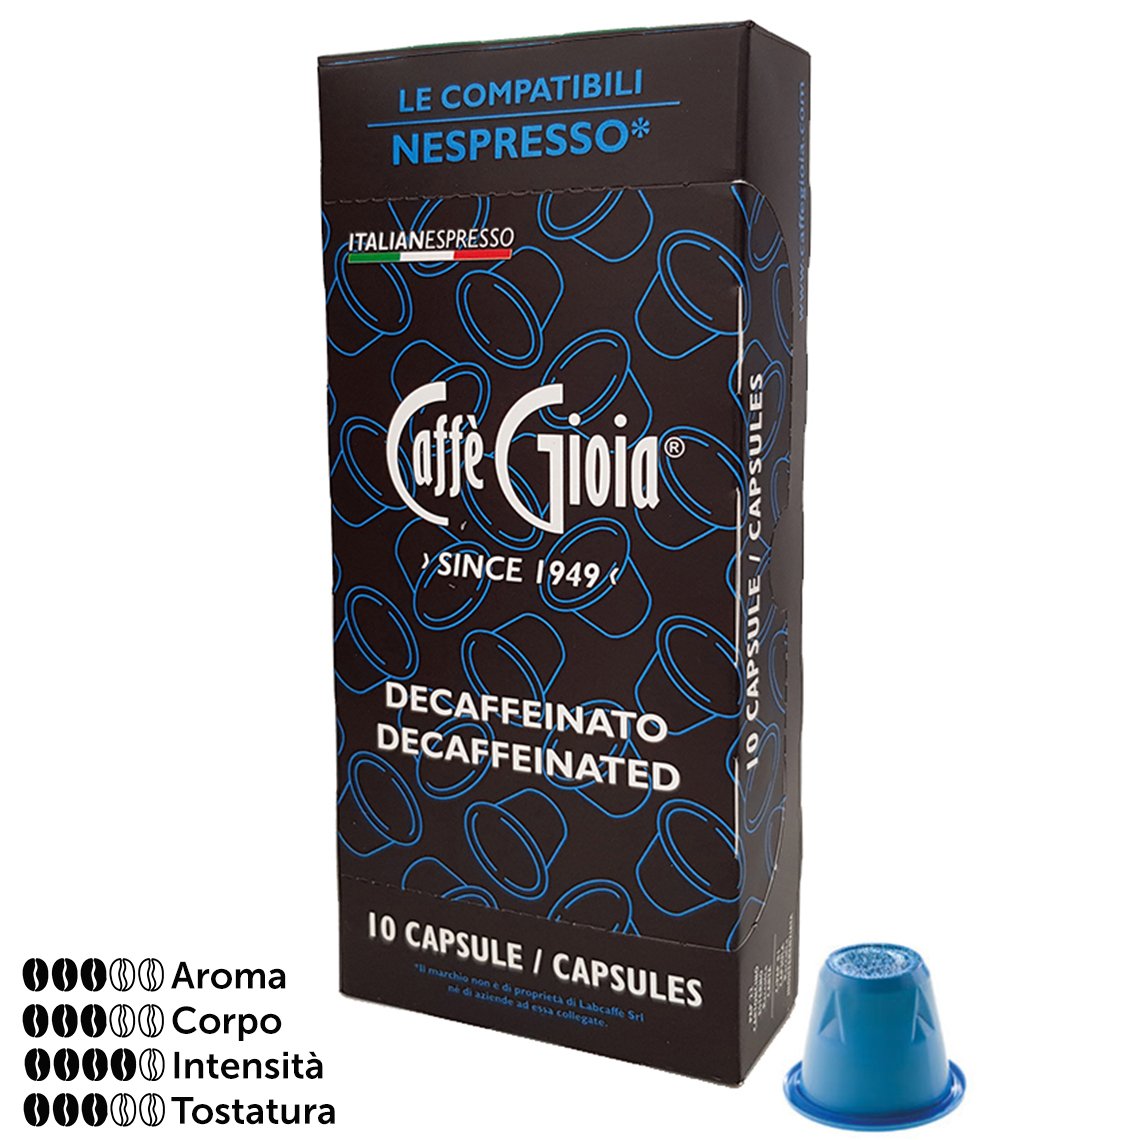 Caffe Gioia Nespresso Compatible Espresso Capsules Decaffeinated, 10pk